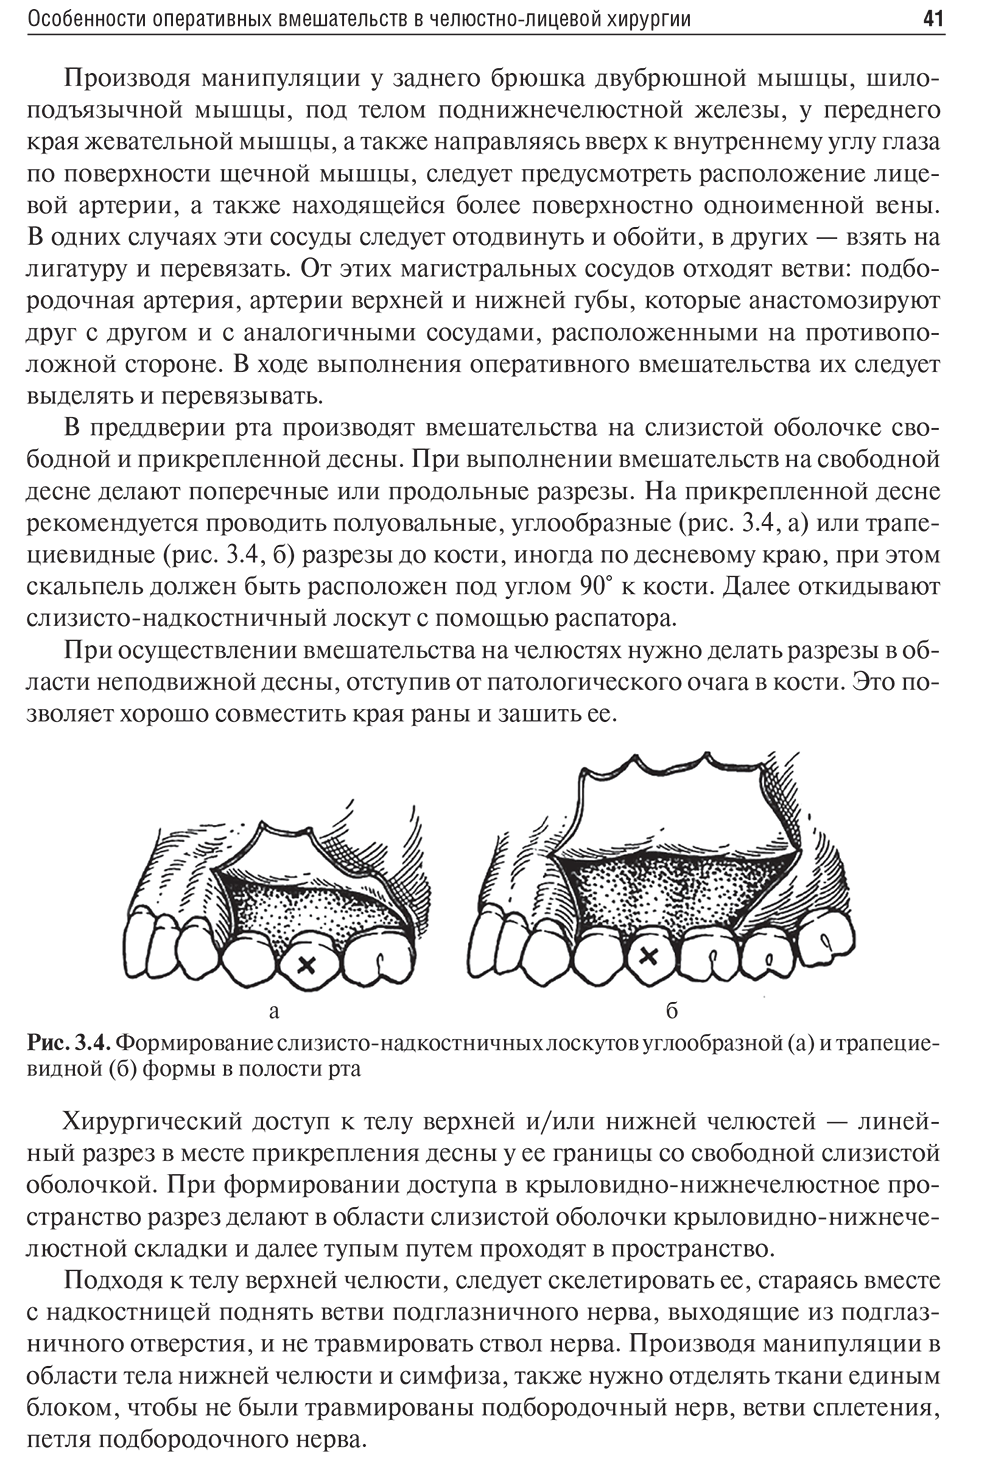 Формирование слизисто-надкостничных лоскутов углообразной